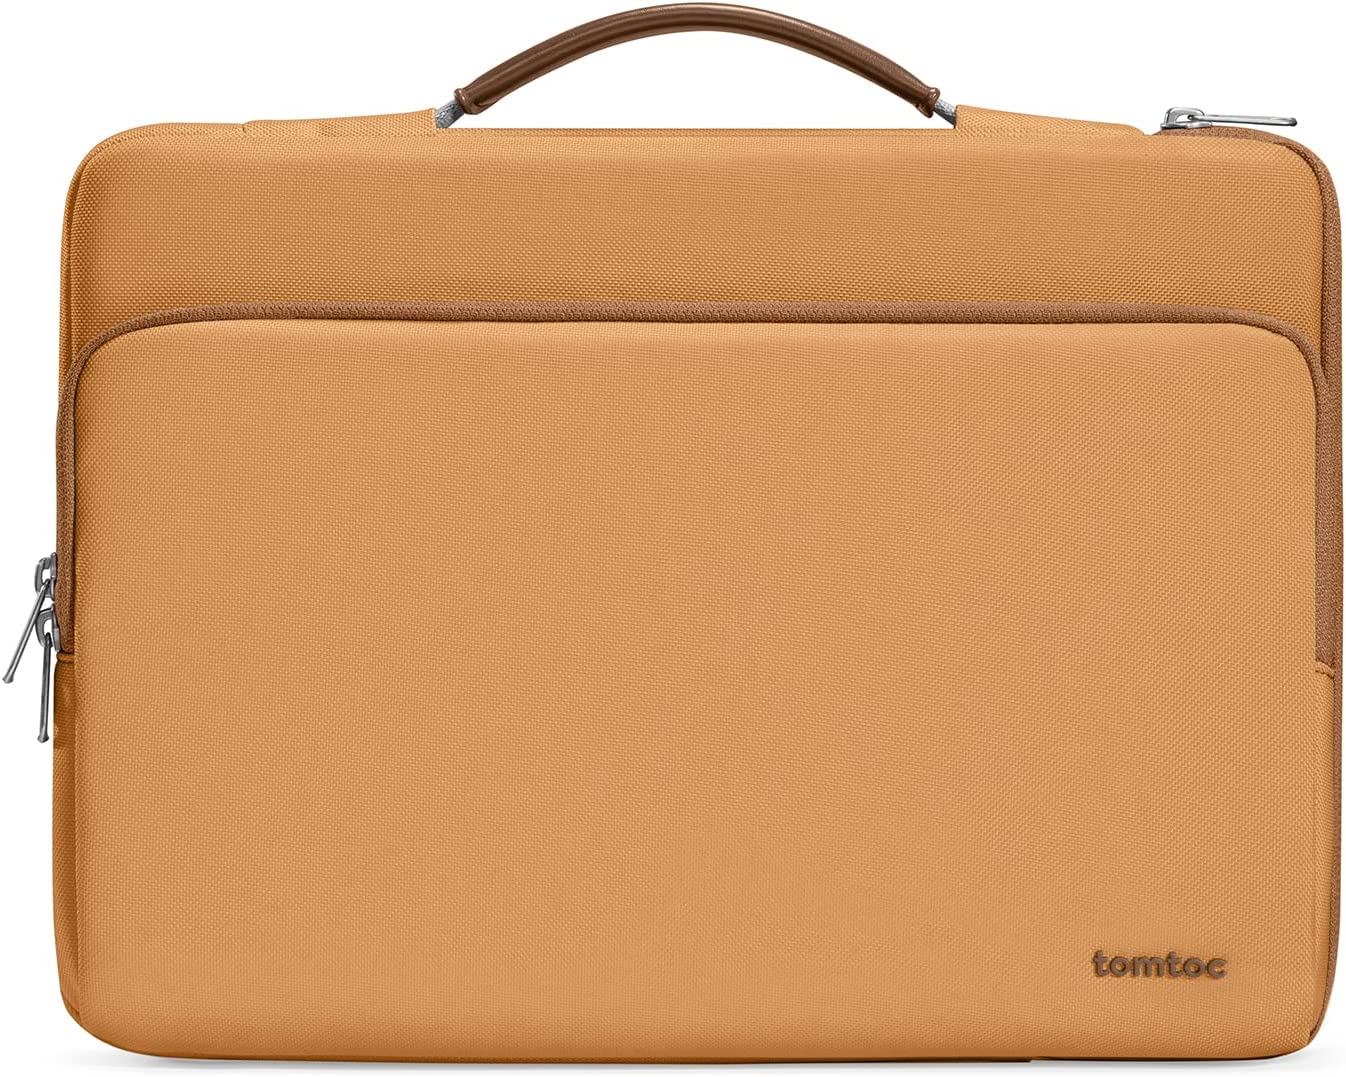 Tomtoc Defender-A14 Laptop Handbag For 16 inch - Bronze